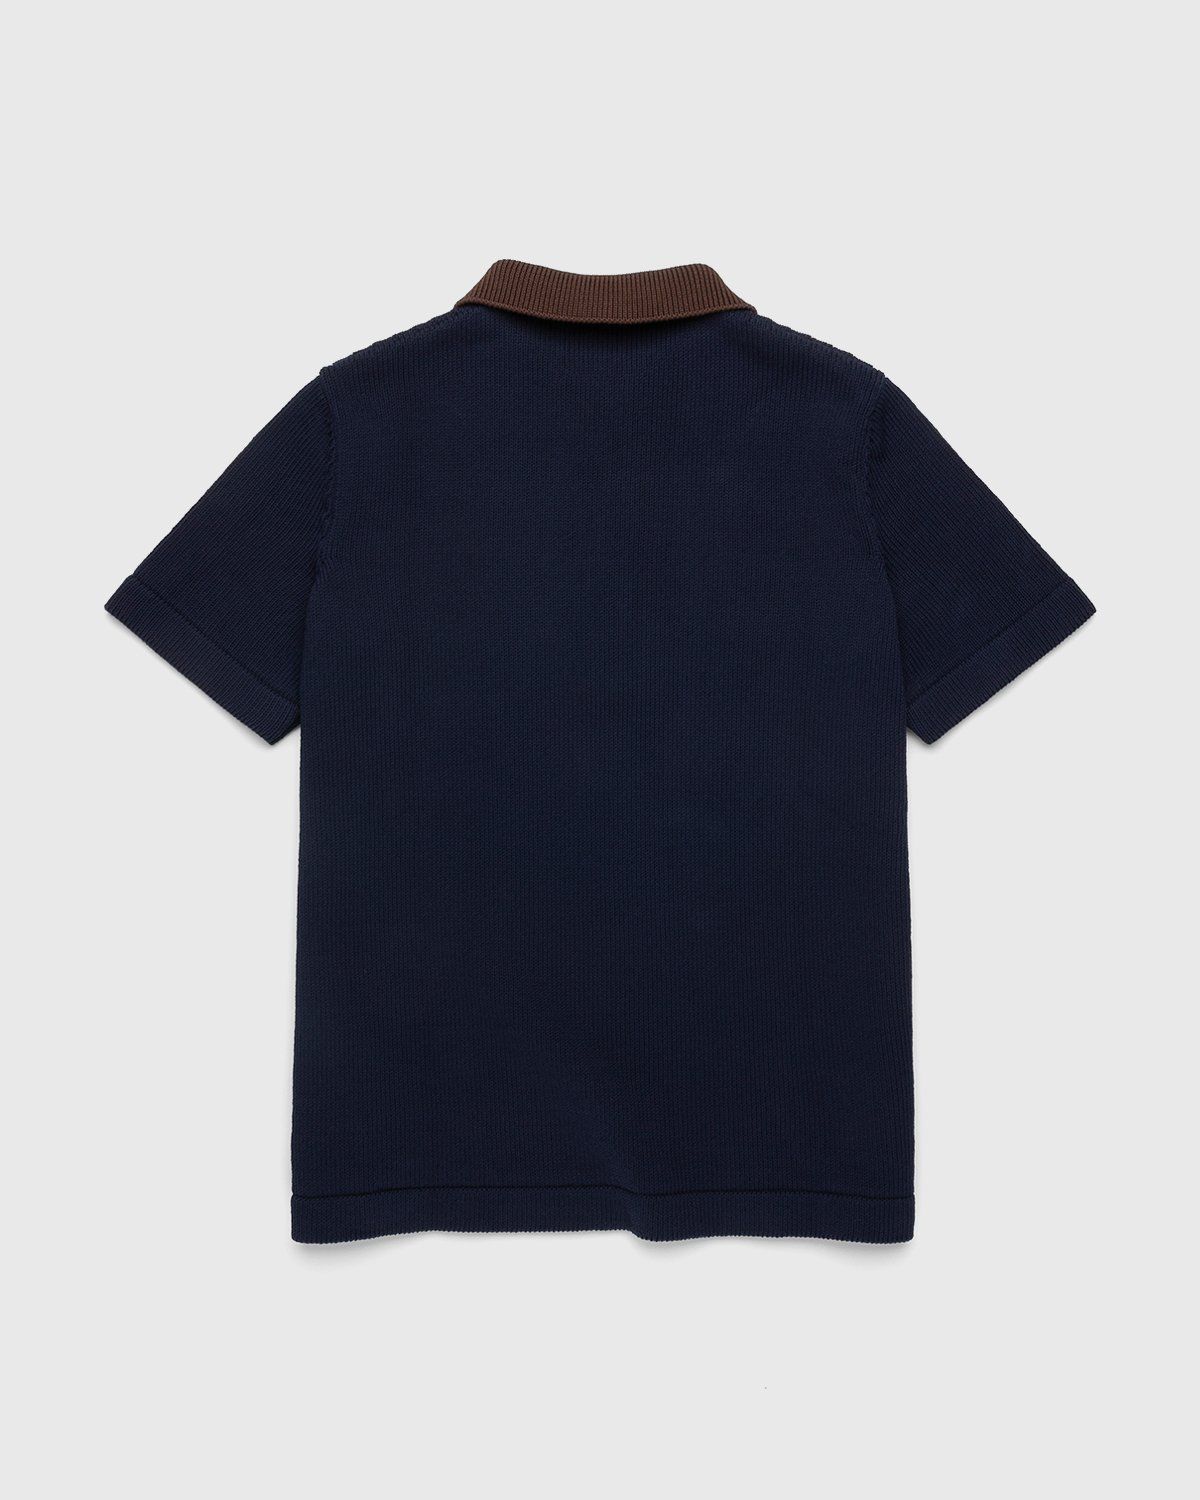 Jil Sander – Short Sleeve Knit Shirt Dark Blue - Polos - Blue - Image 2